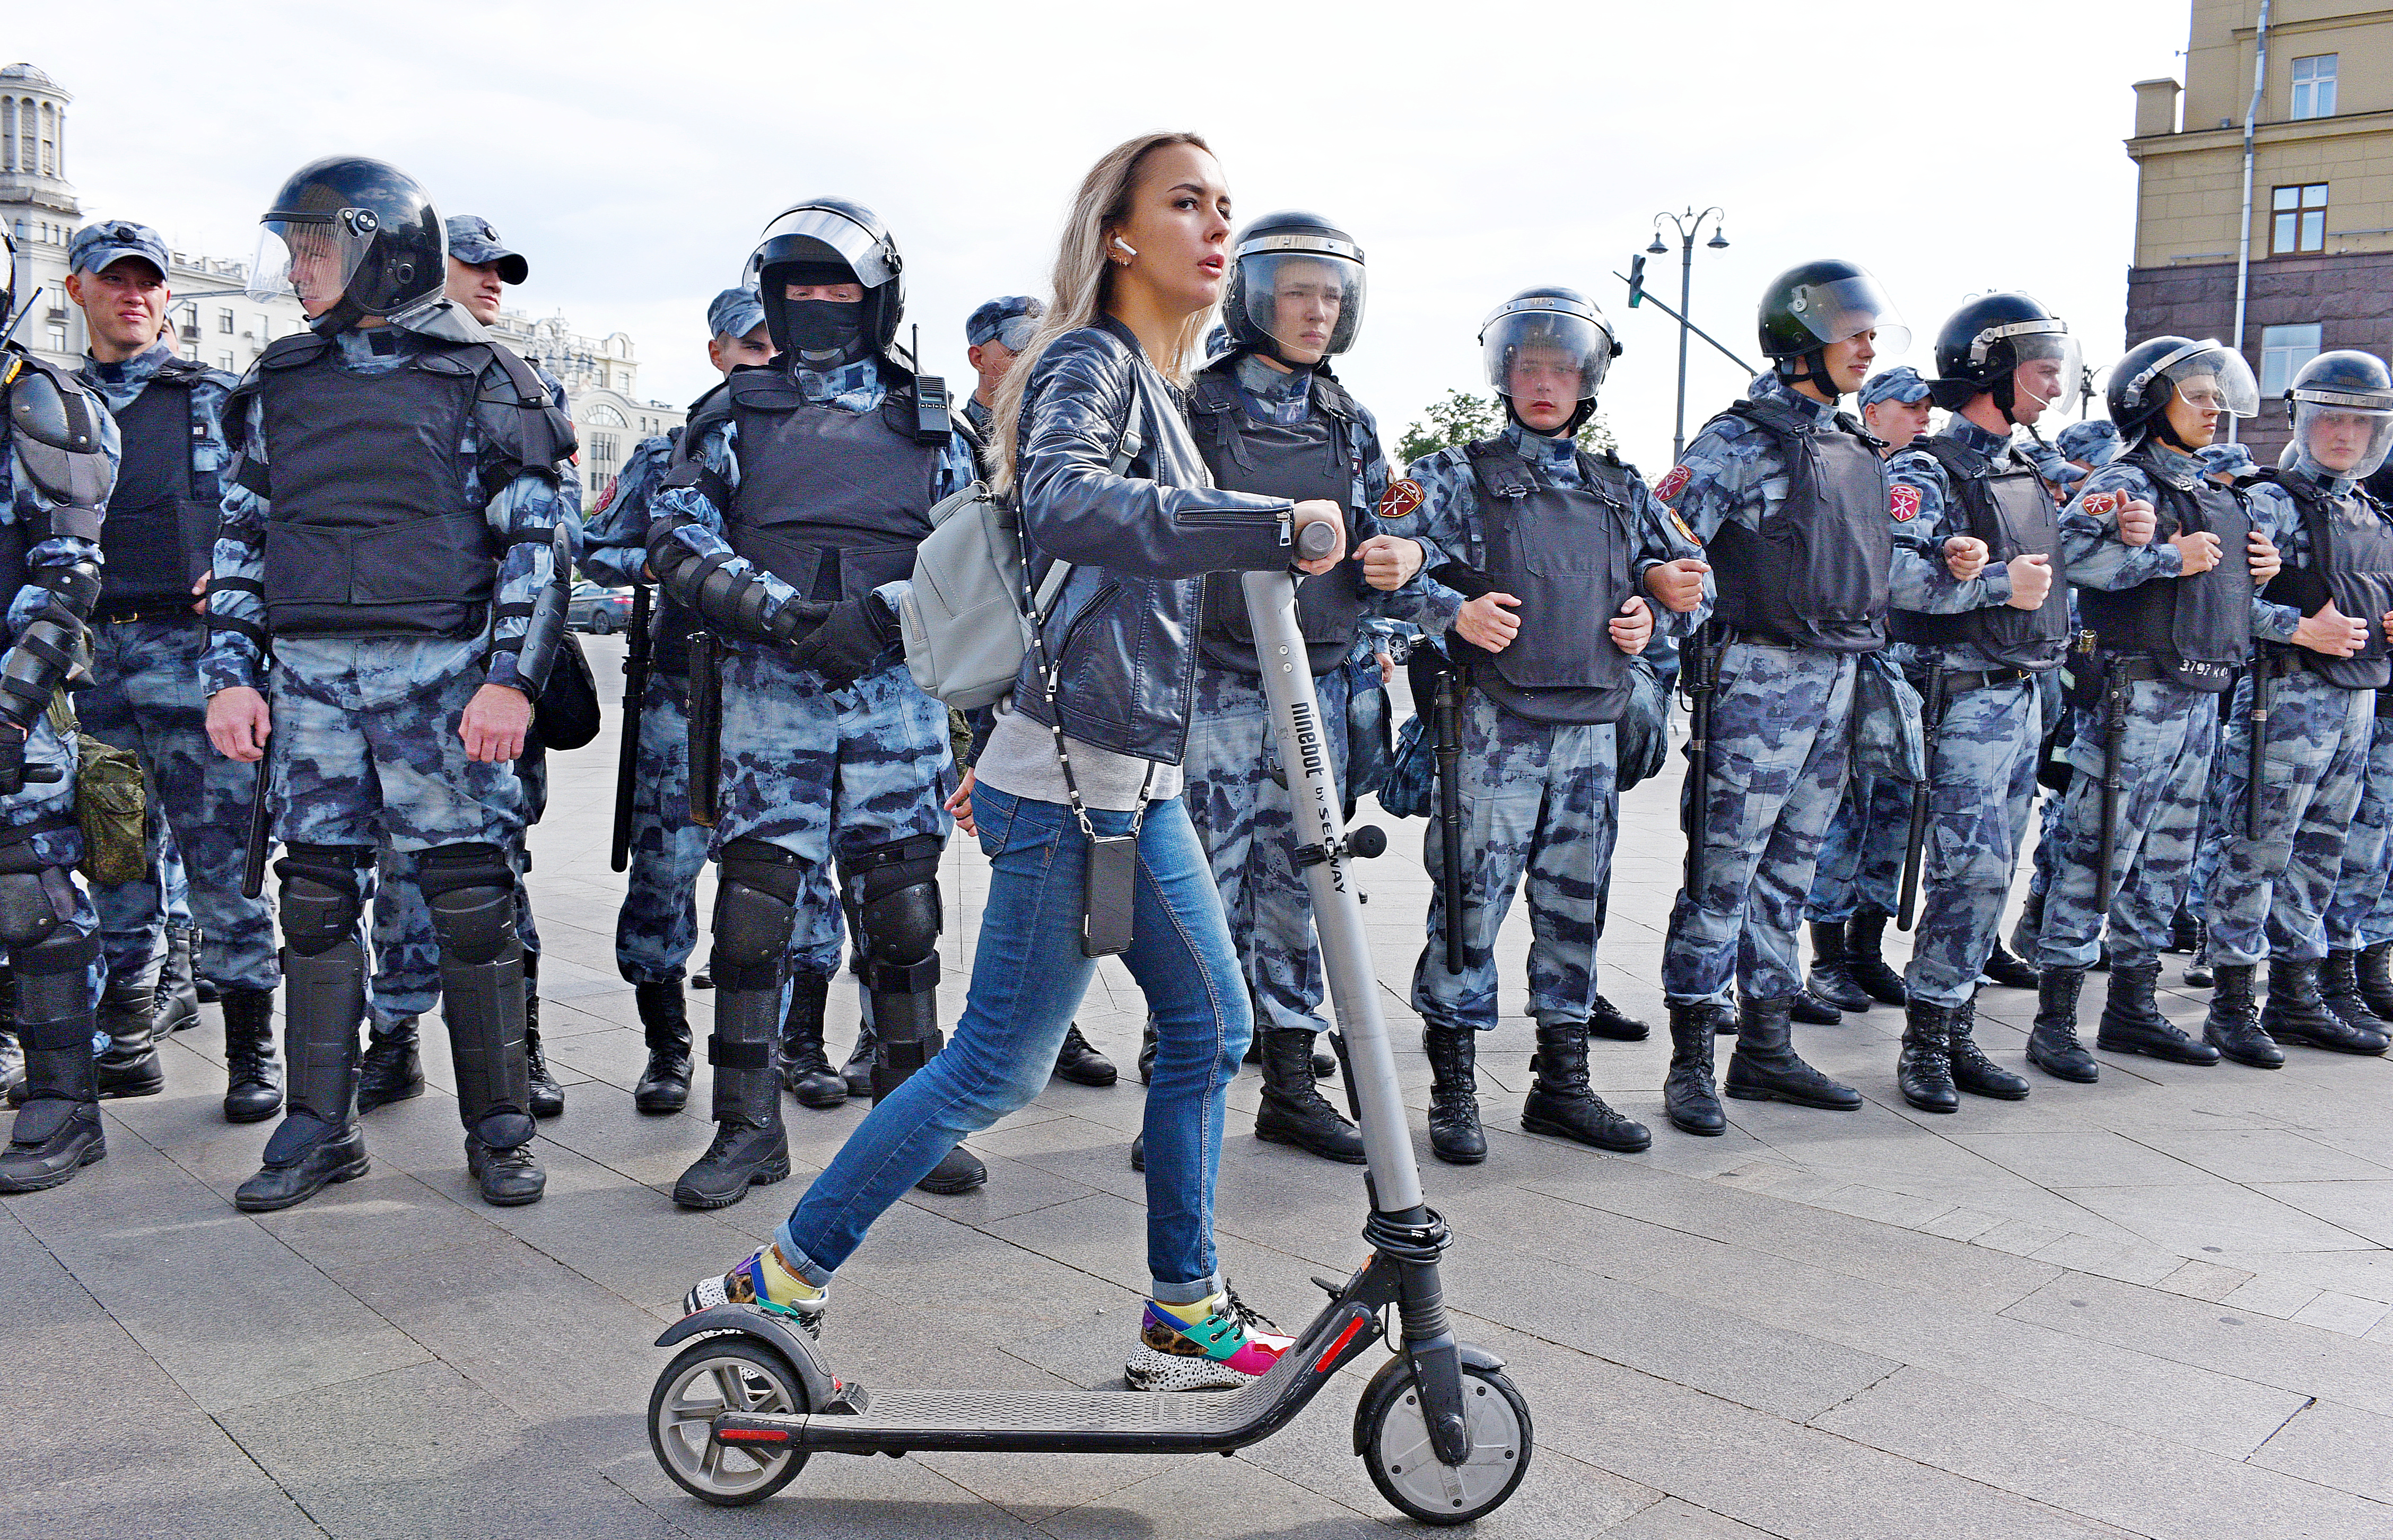 3 июля 2019 года. На Пушкинской площади полиция была готова охранять покой жителей города и туристов. Фото: Пелагия Замятина